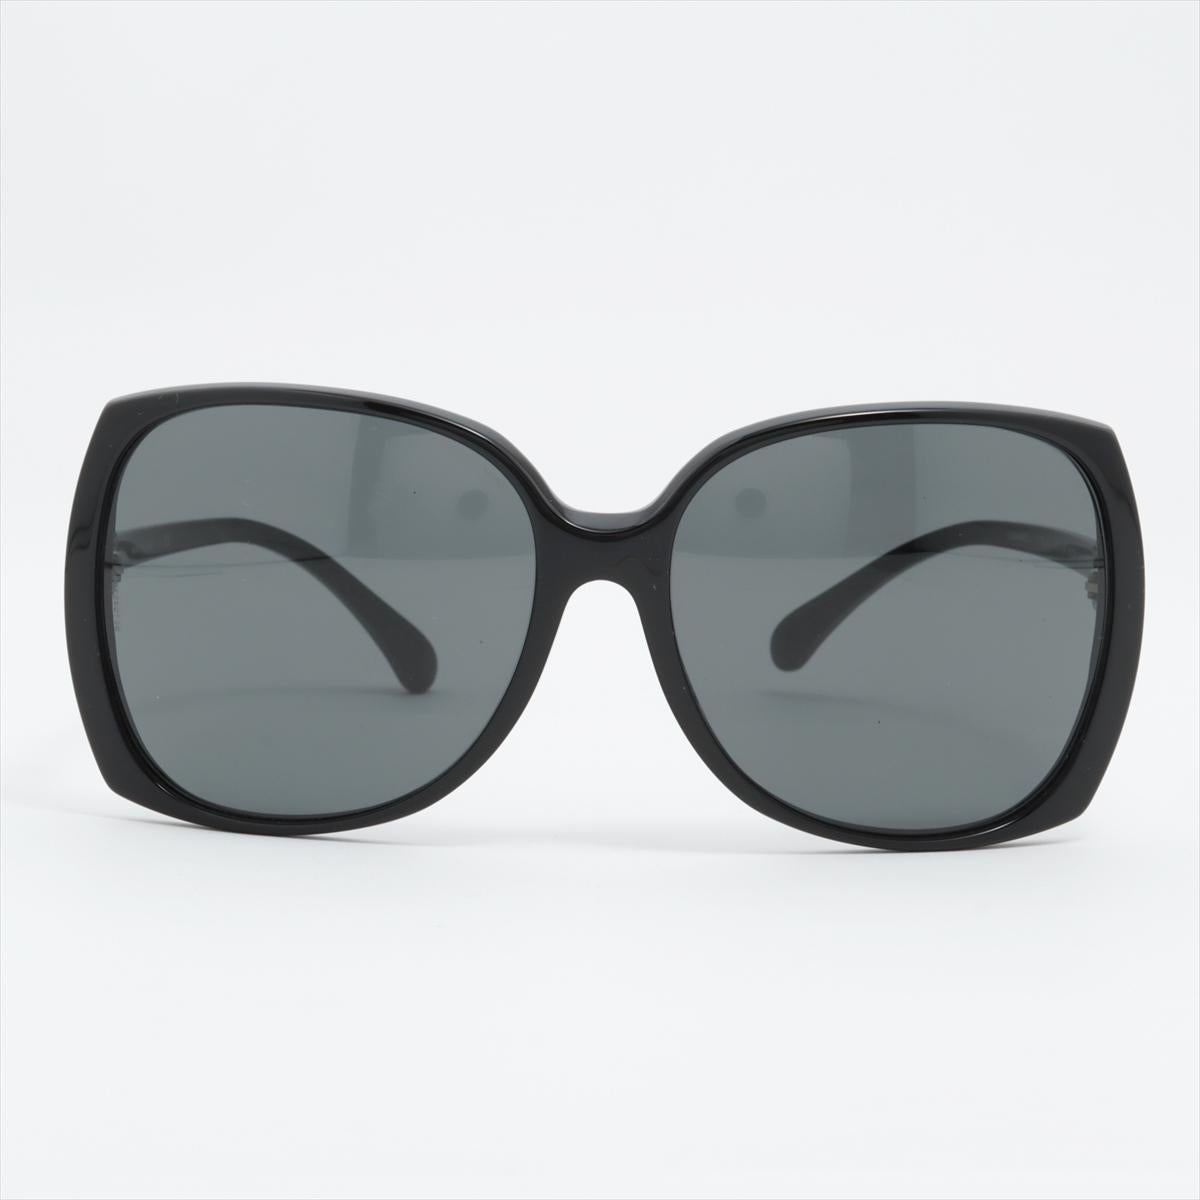 Les lunettes de soleil carrées surdimensionnées Chanel CC Logo en plastique noir exsudent l'élégance et la sophistication intemporelles. Dotées d'une monture carrée surdimensionnée, ces lunettes de soleil font preuve d'audace tout en conservant une